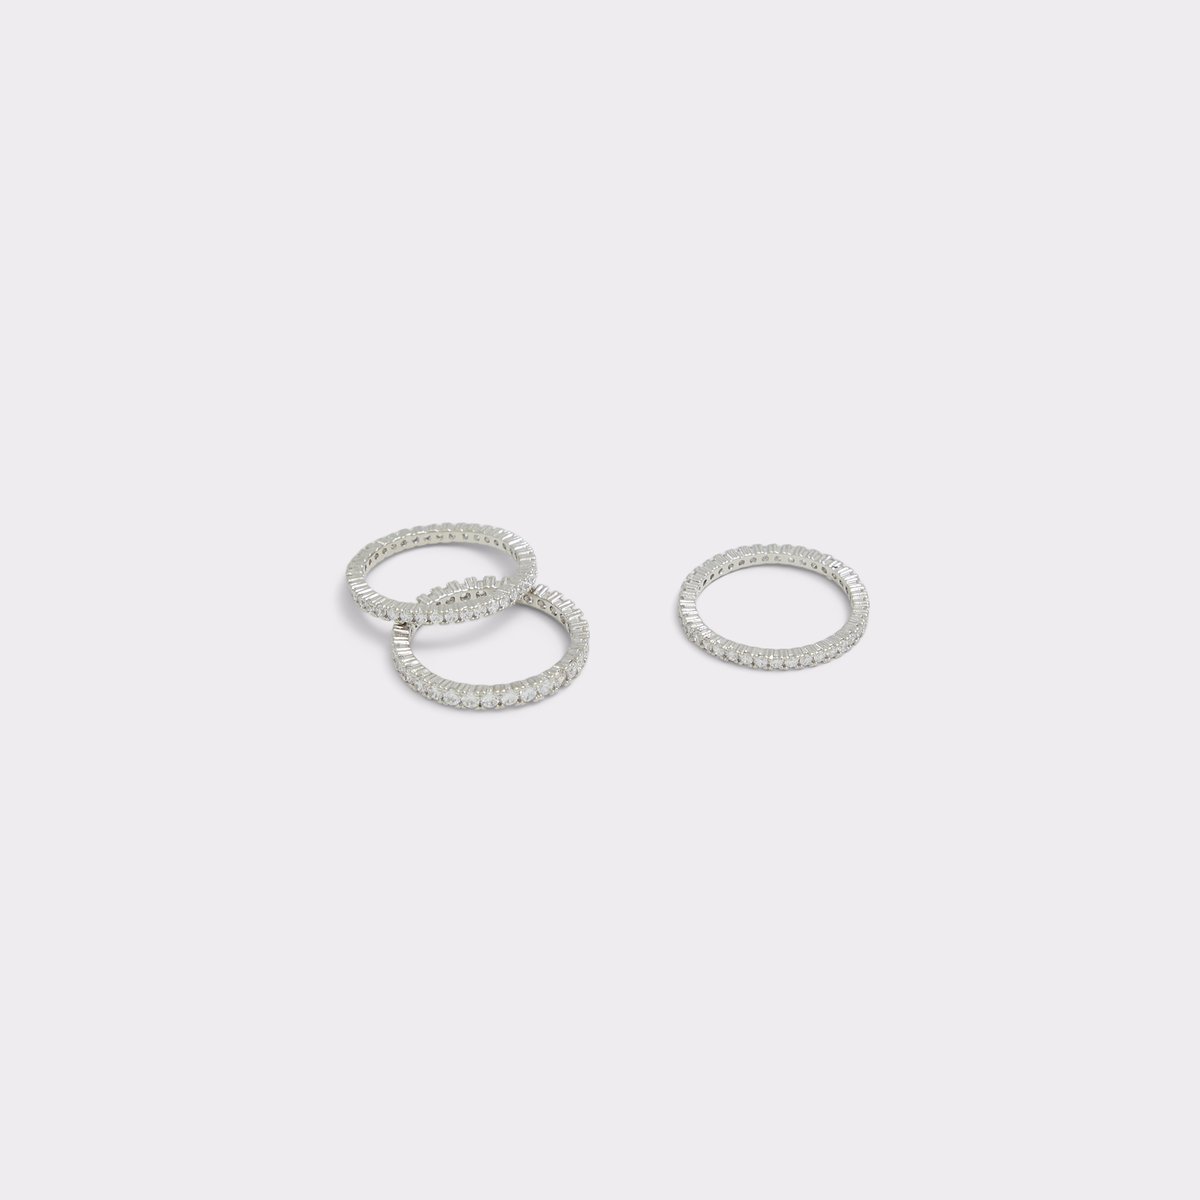 Uniawienmini Silver/Clear Multi Women's Rings | ALDO Canada